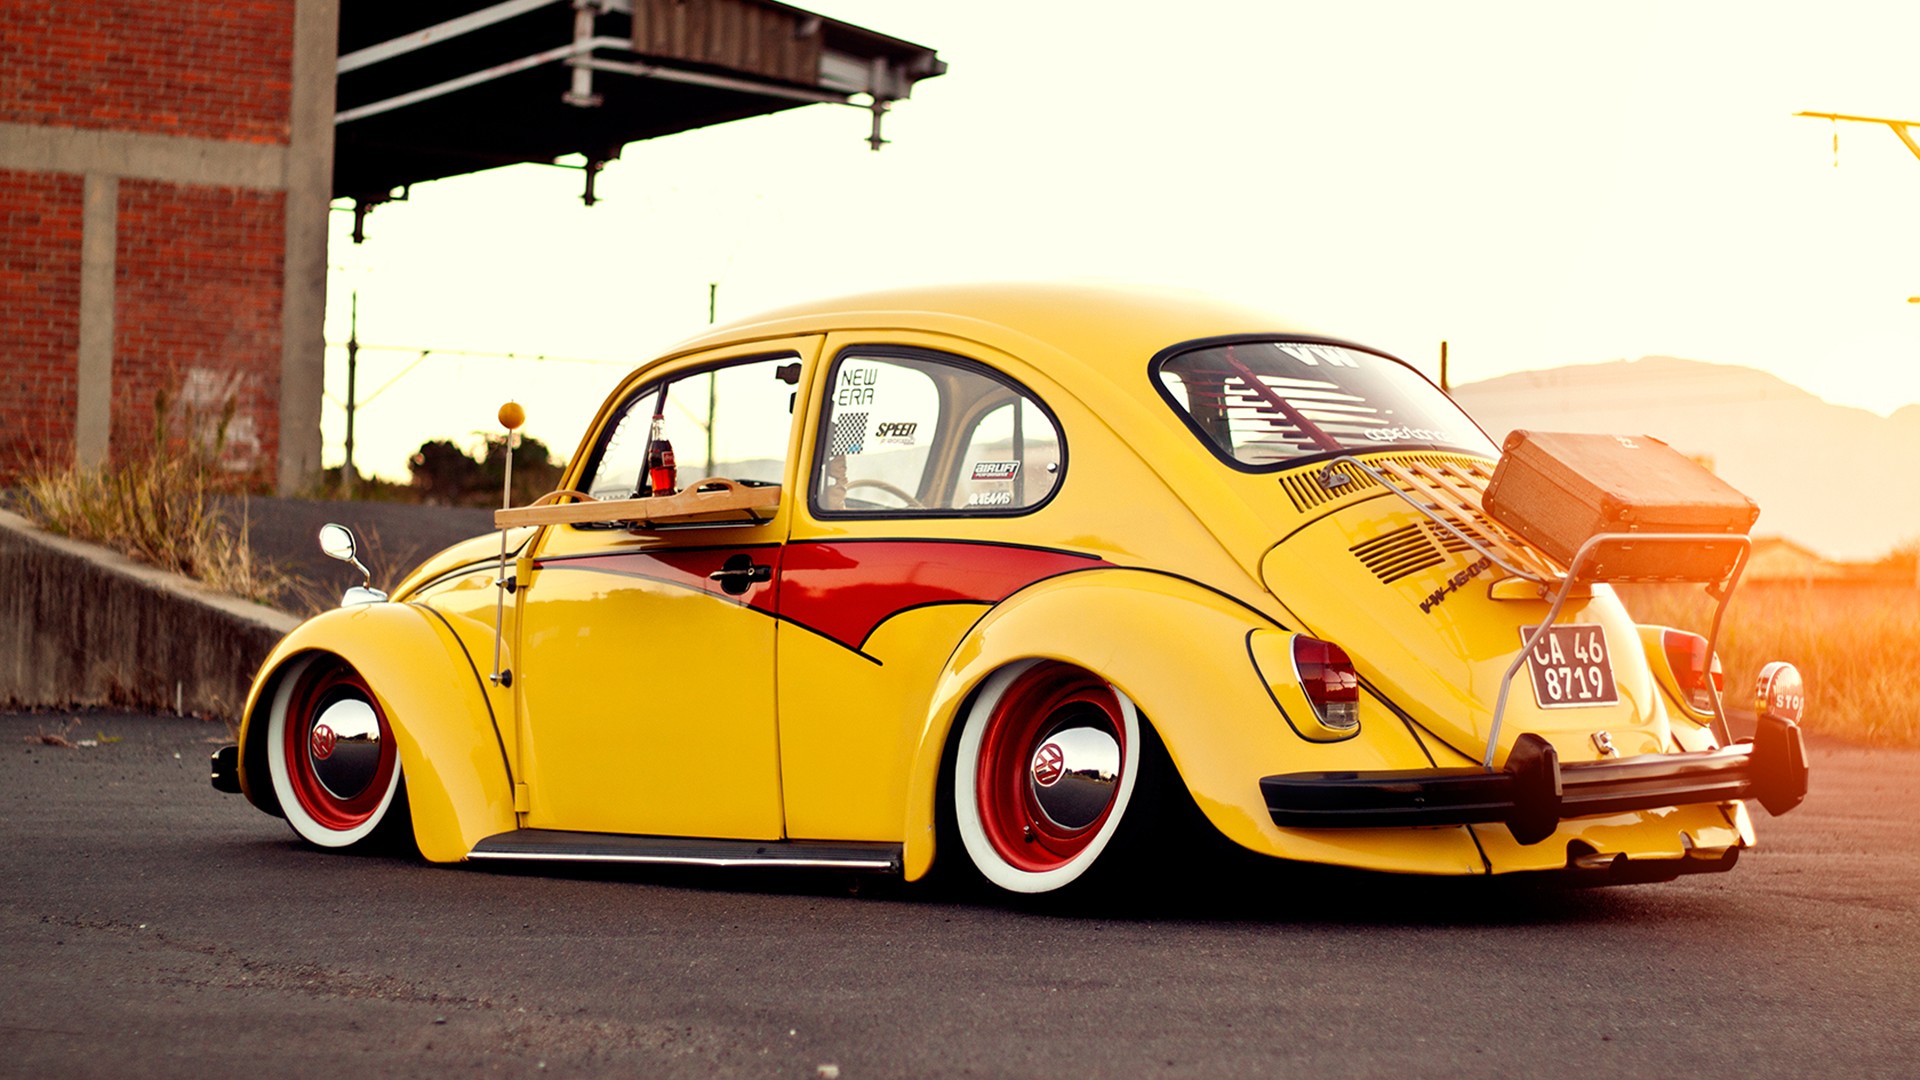 Volkswagen Beetle HD Wallpaper | Background Image | 1920x1080